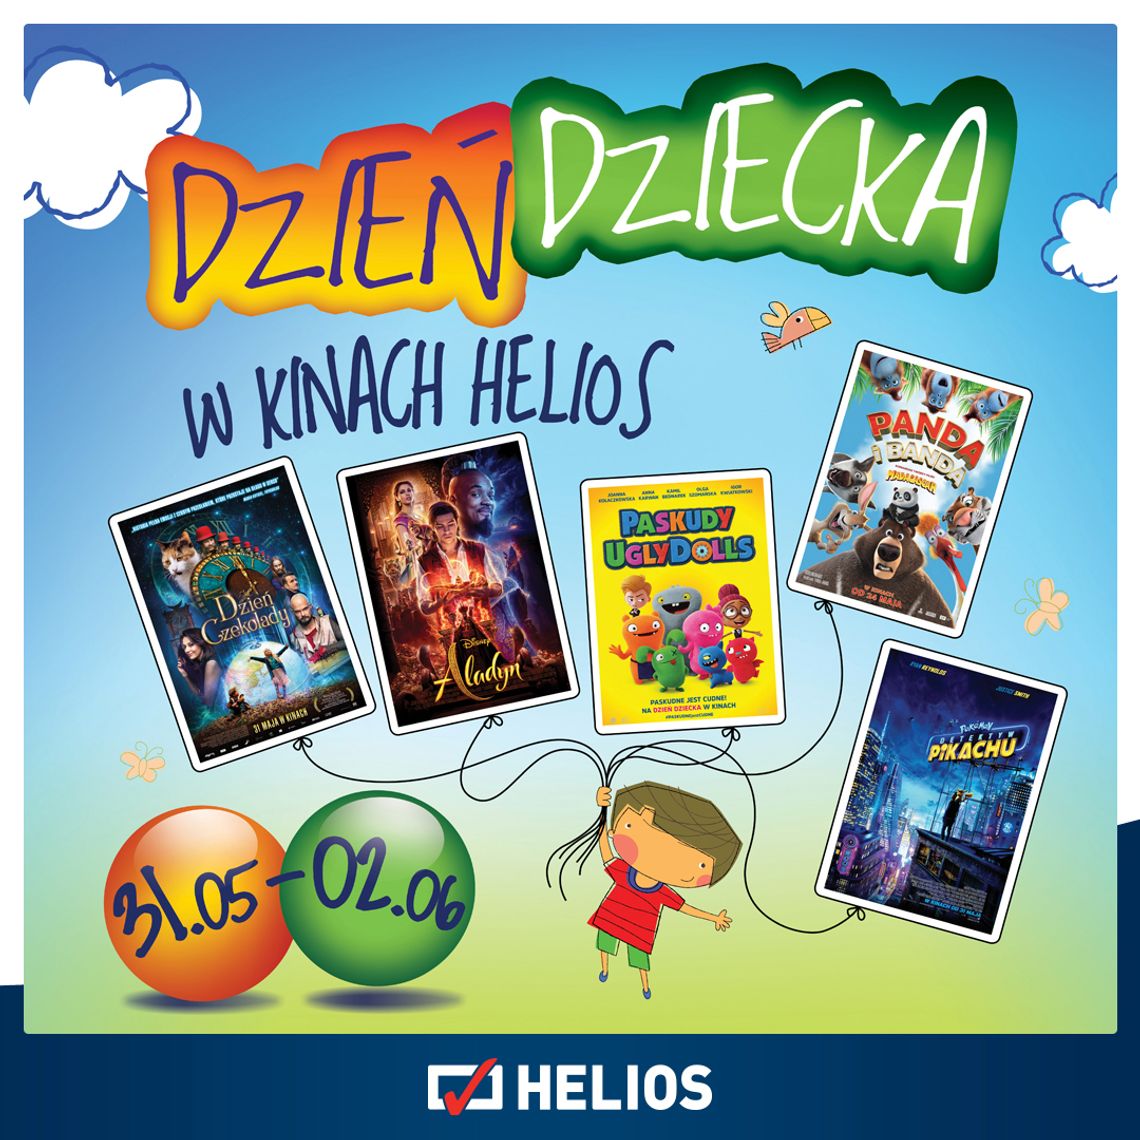 Weekend Dnia Dziecka w kinie Helios Tomaszów Mazowiecki to specjalne pokazy dla dzieci w każdym wieku!